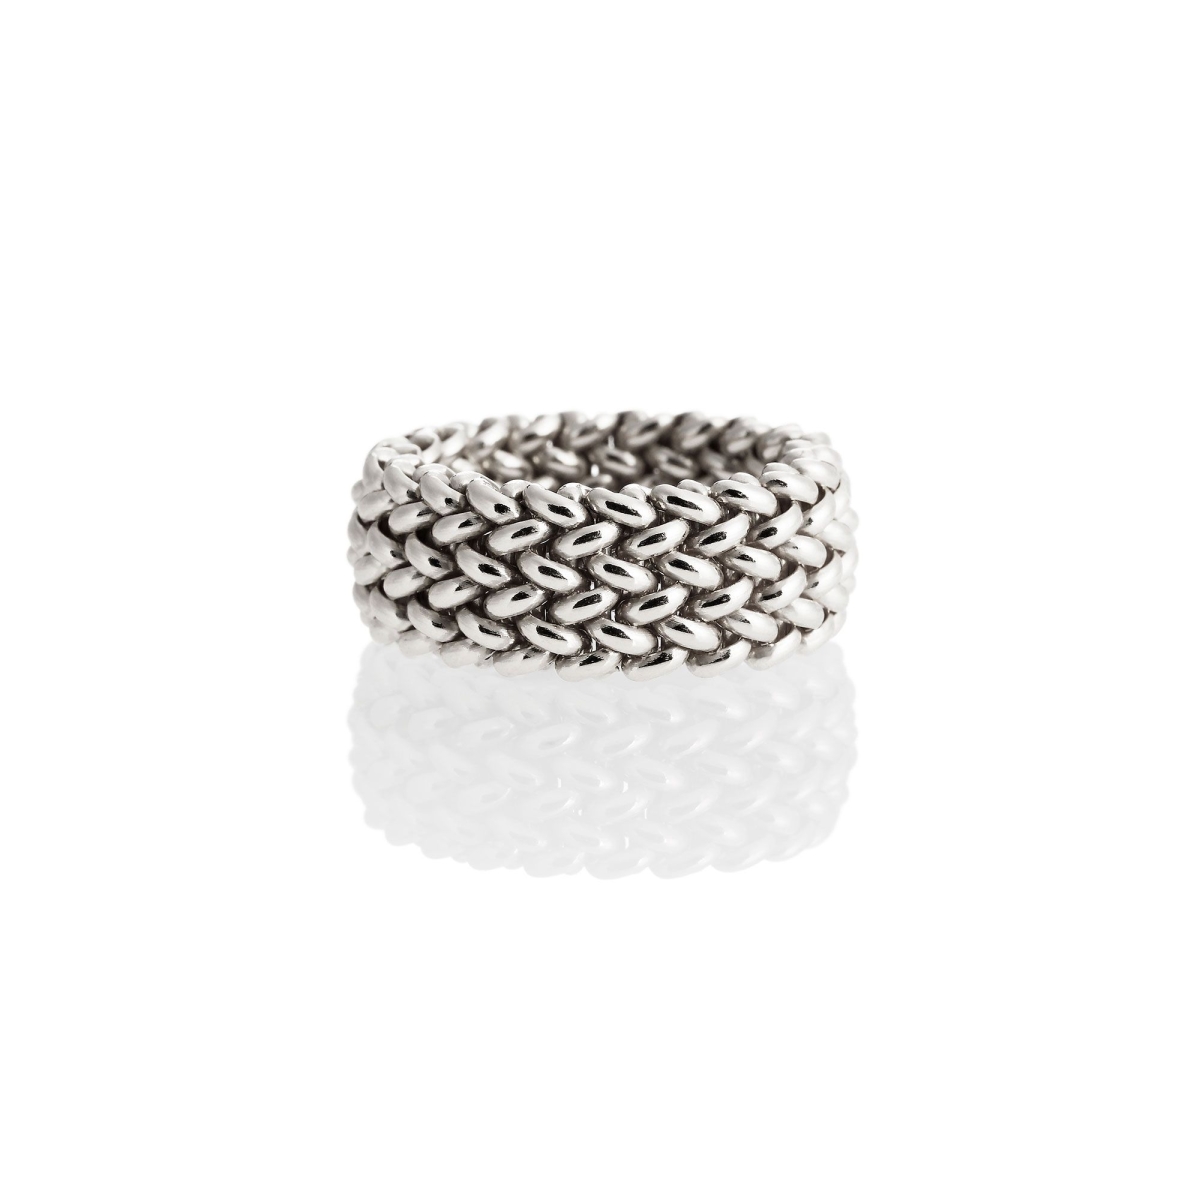 UNOAERRE - White Silver Ring Size L-1/2